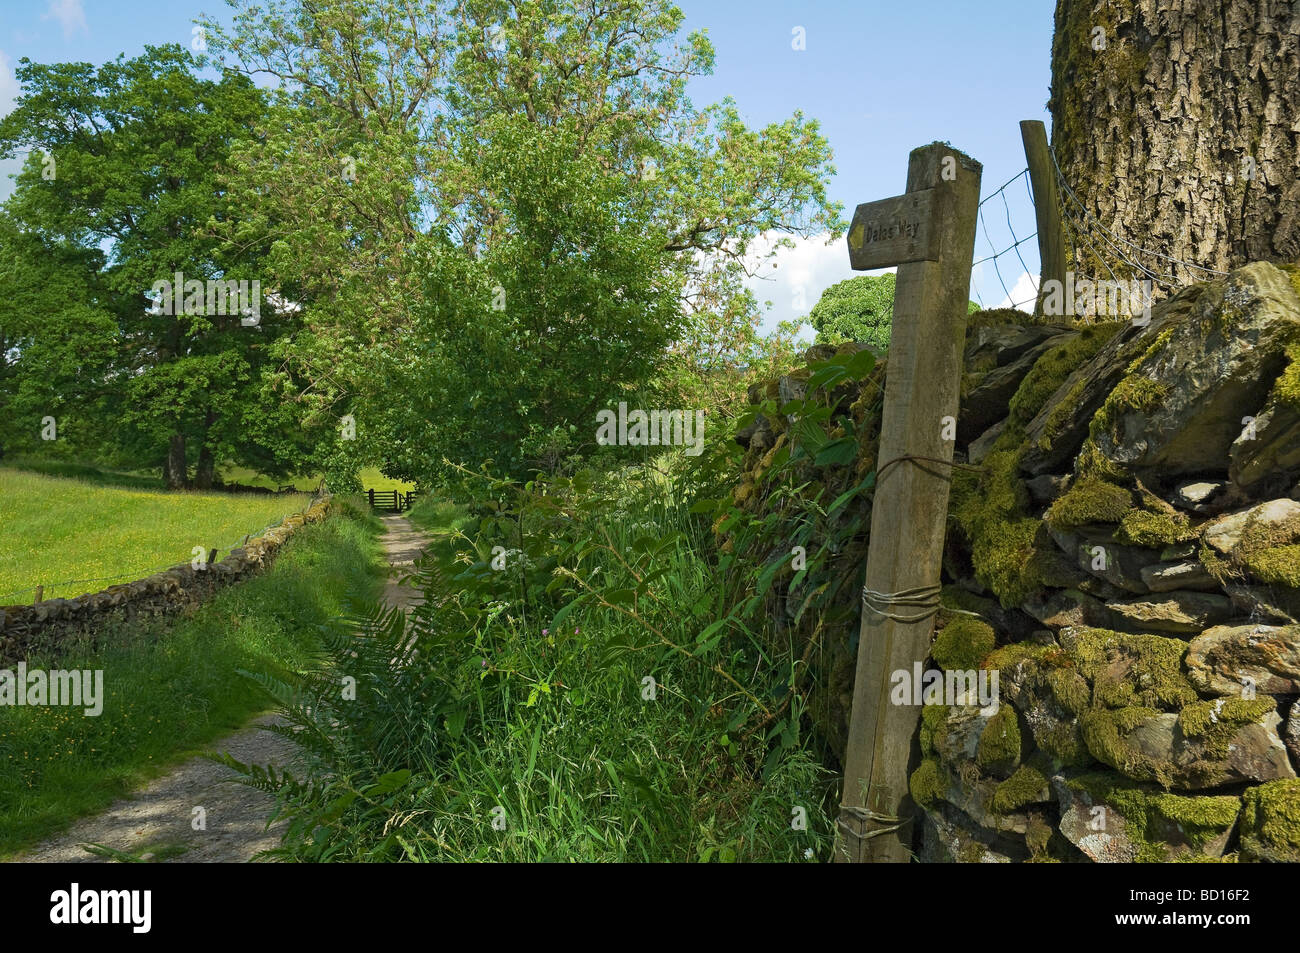 Holzschild für den Dales Way Fußweg nach unten Spur Im Sommer Cumbria Lake District National Park England Vereinigtes Königreich Großbritannien GB Großbritannien Stockfoto